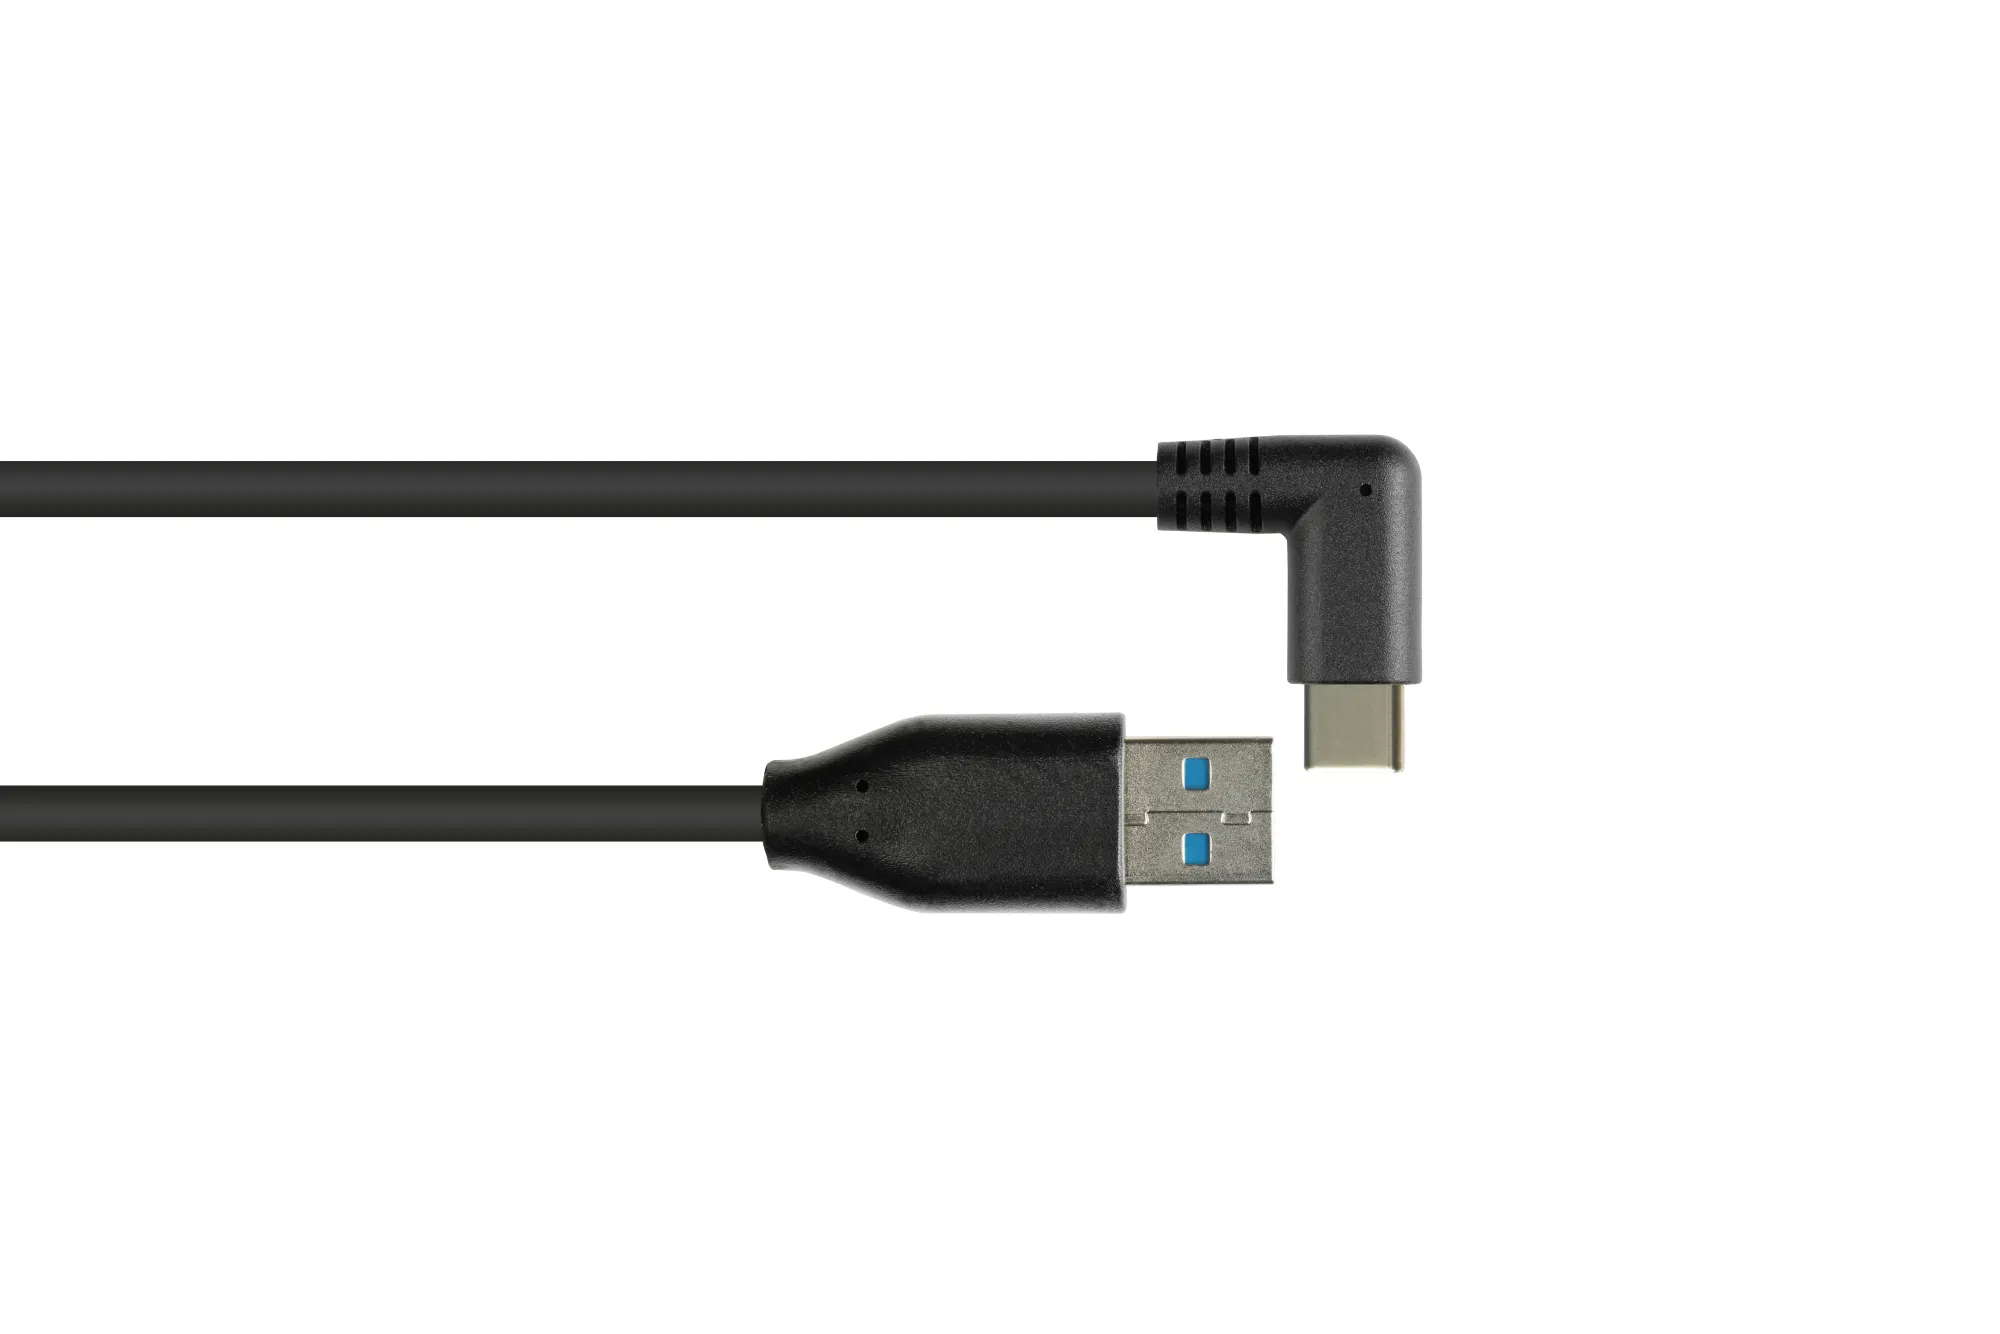 Anschlusskabel USB 3.0, USB-C™ Stecker 90° gewinkelt an USB 3.0 A Stecker, CU, schwarz, 0,5m, Good C